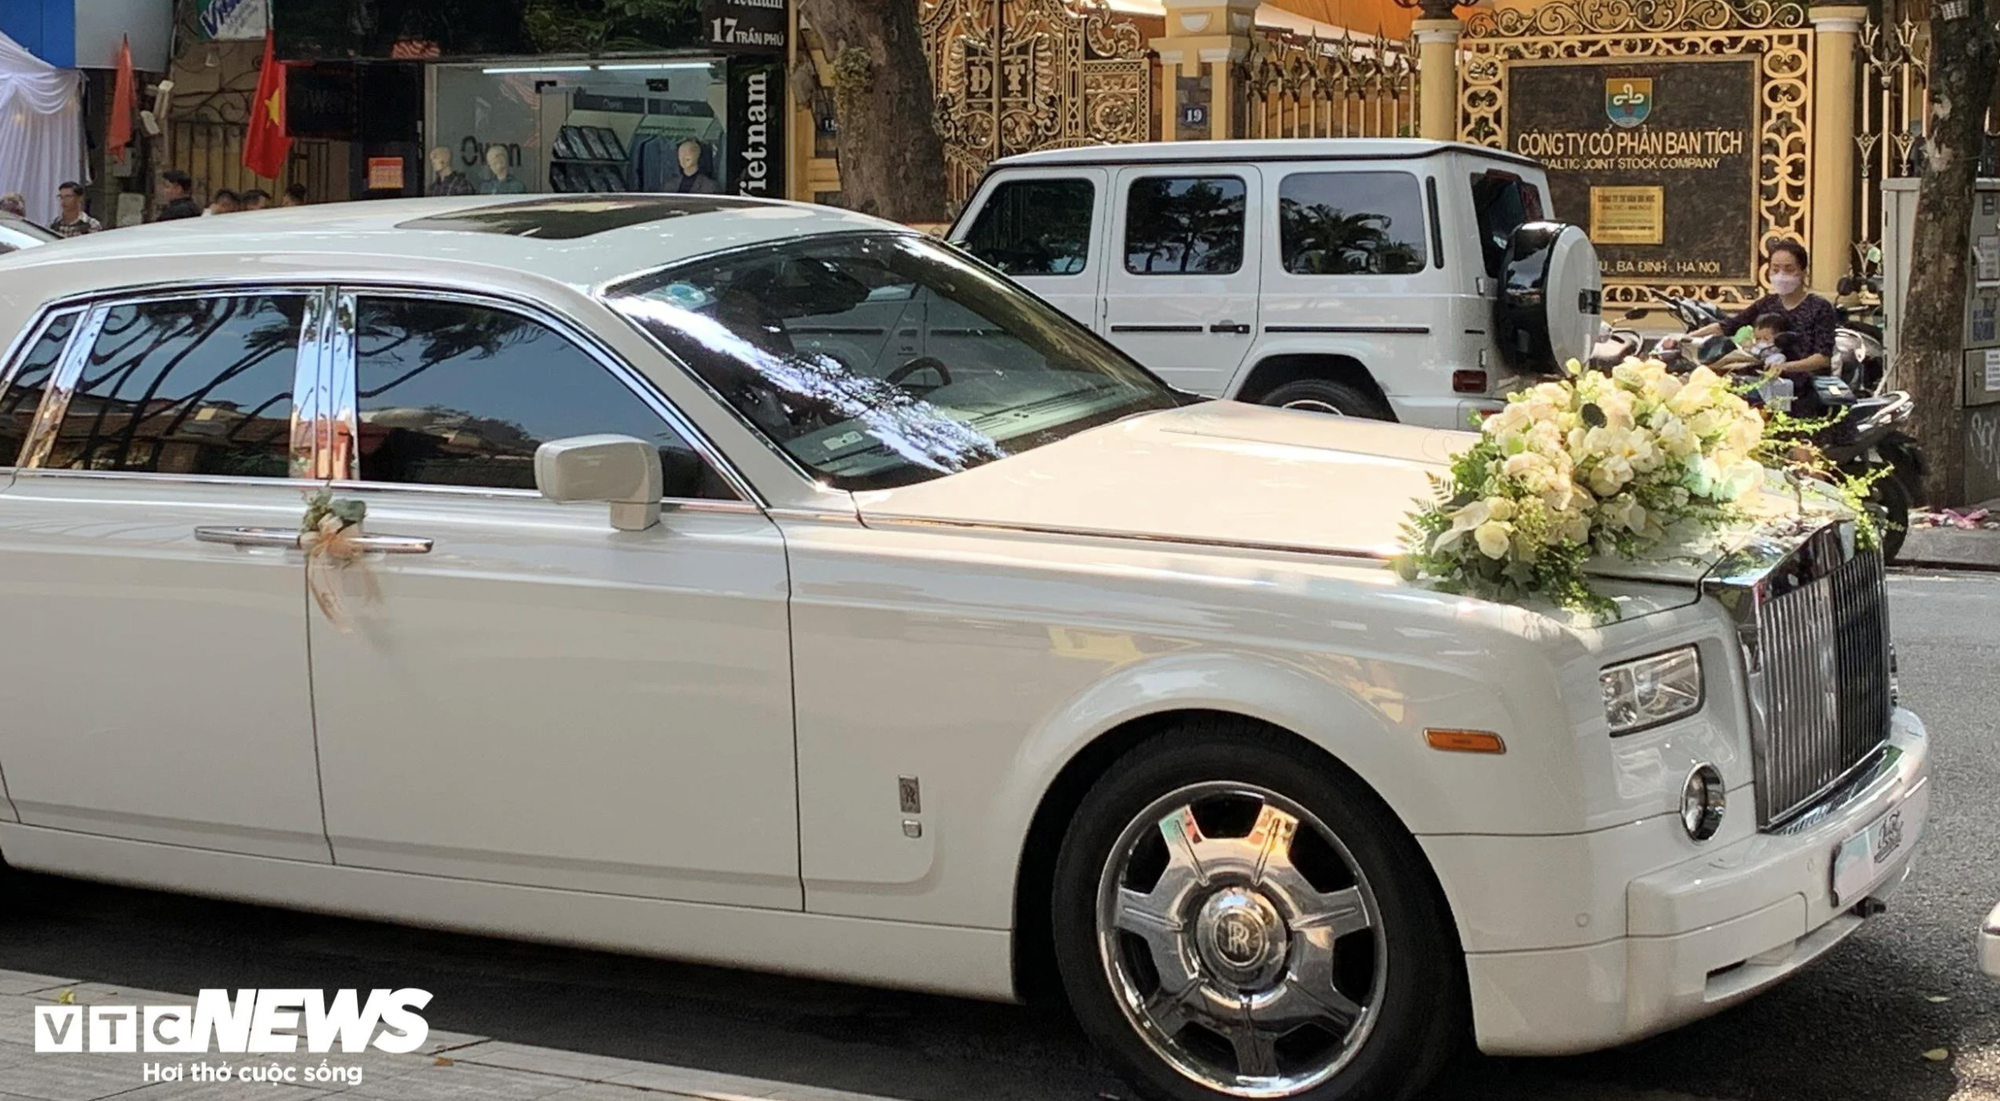 Cận cảnh chiếc Rolls Royce Phantom gần 50 tỷ Đoàn Văn Hậu đến đón cô dâu Doãn Hải My